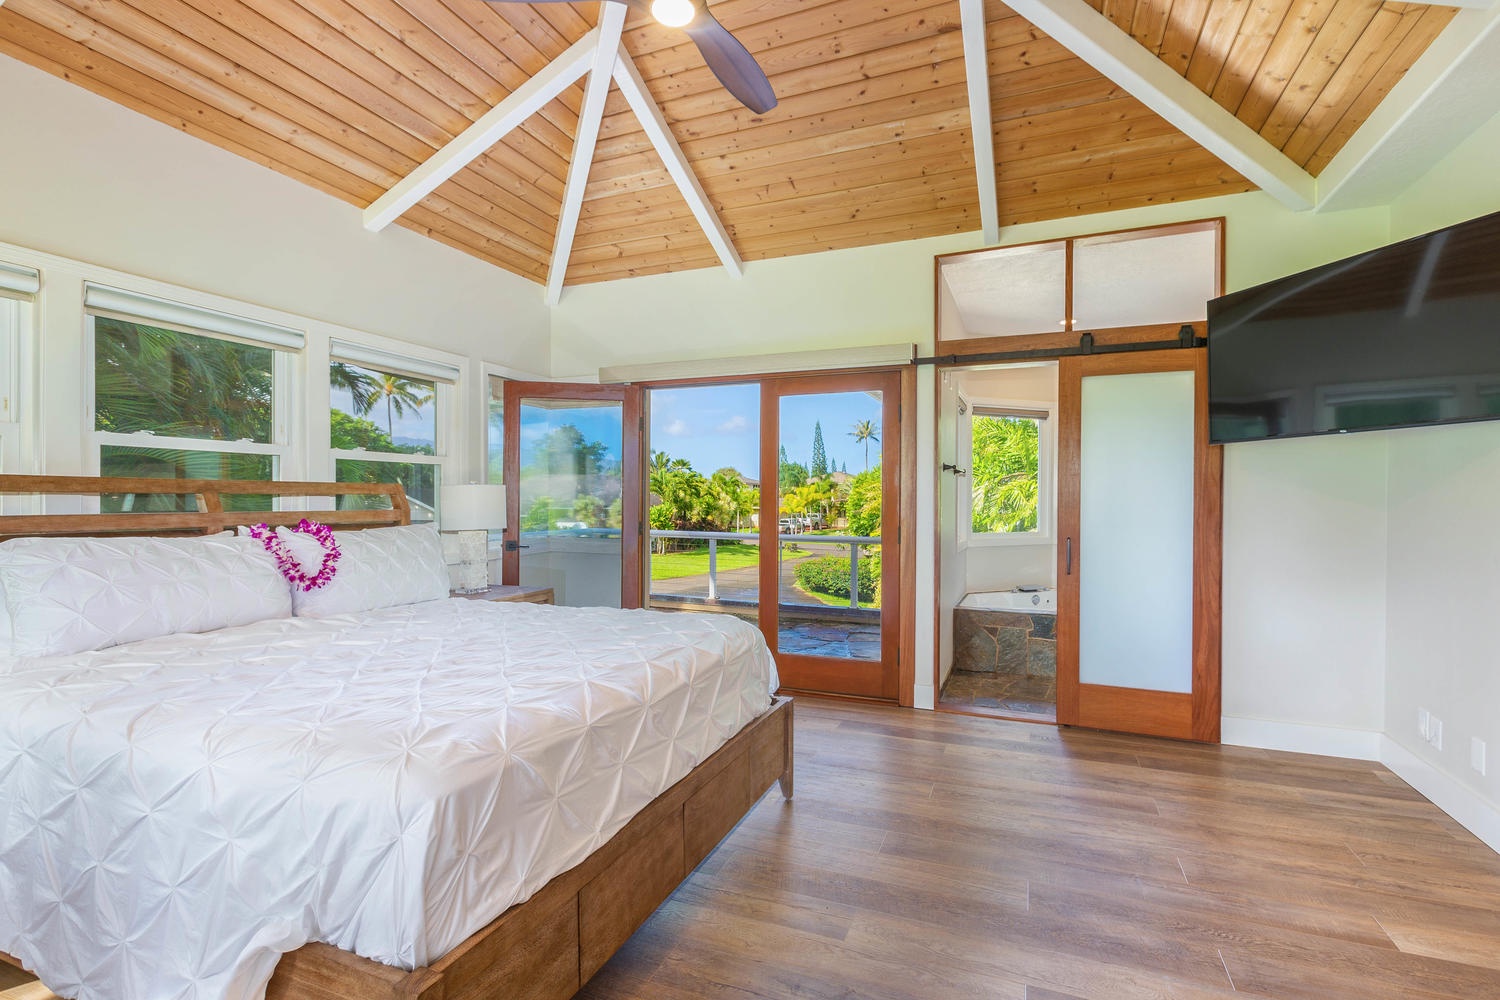 Princeville Vacation Rentals, Pohaku Villa - Primary suite with view